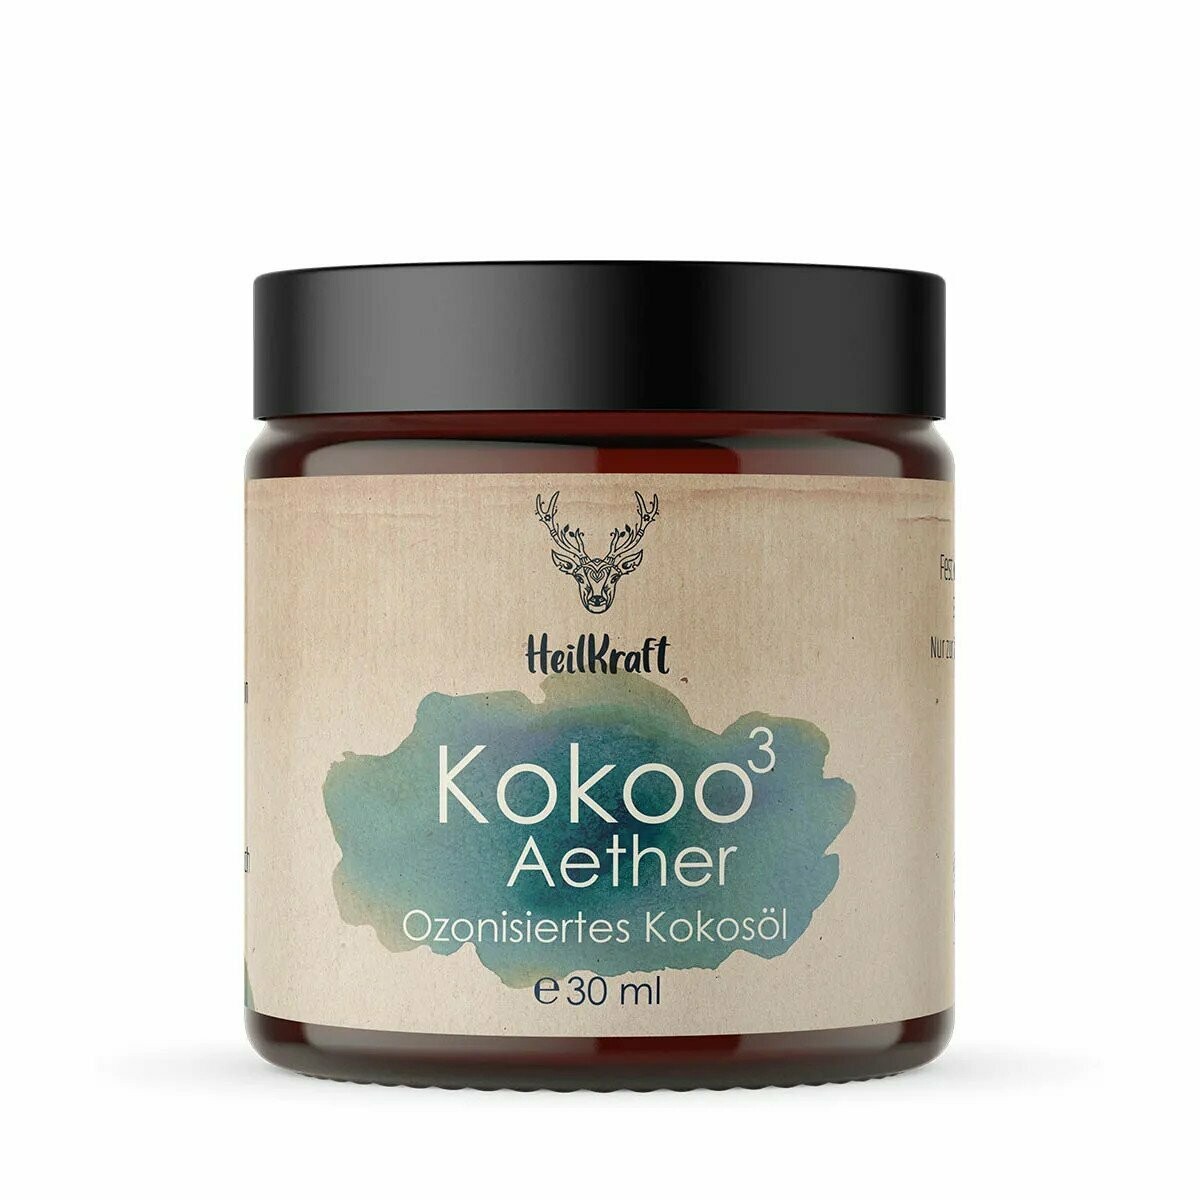 Heilkraft Kokoo³ Aether- Ozonisiertes Kokosöl + Ätherische Öle 30ml